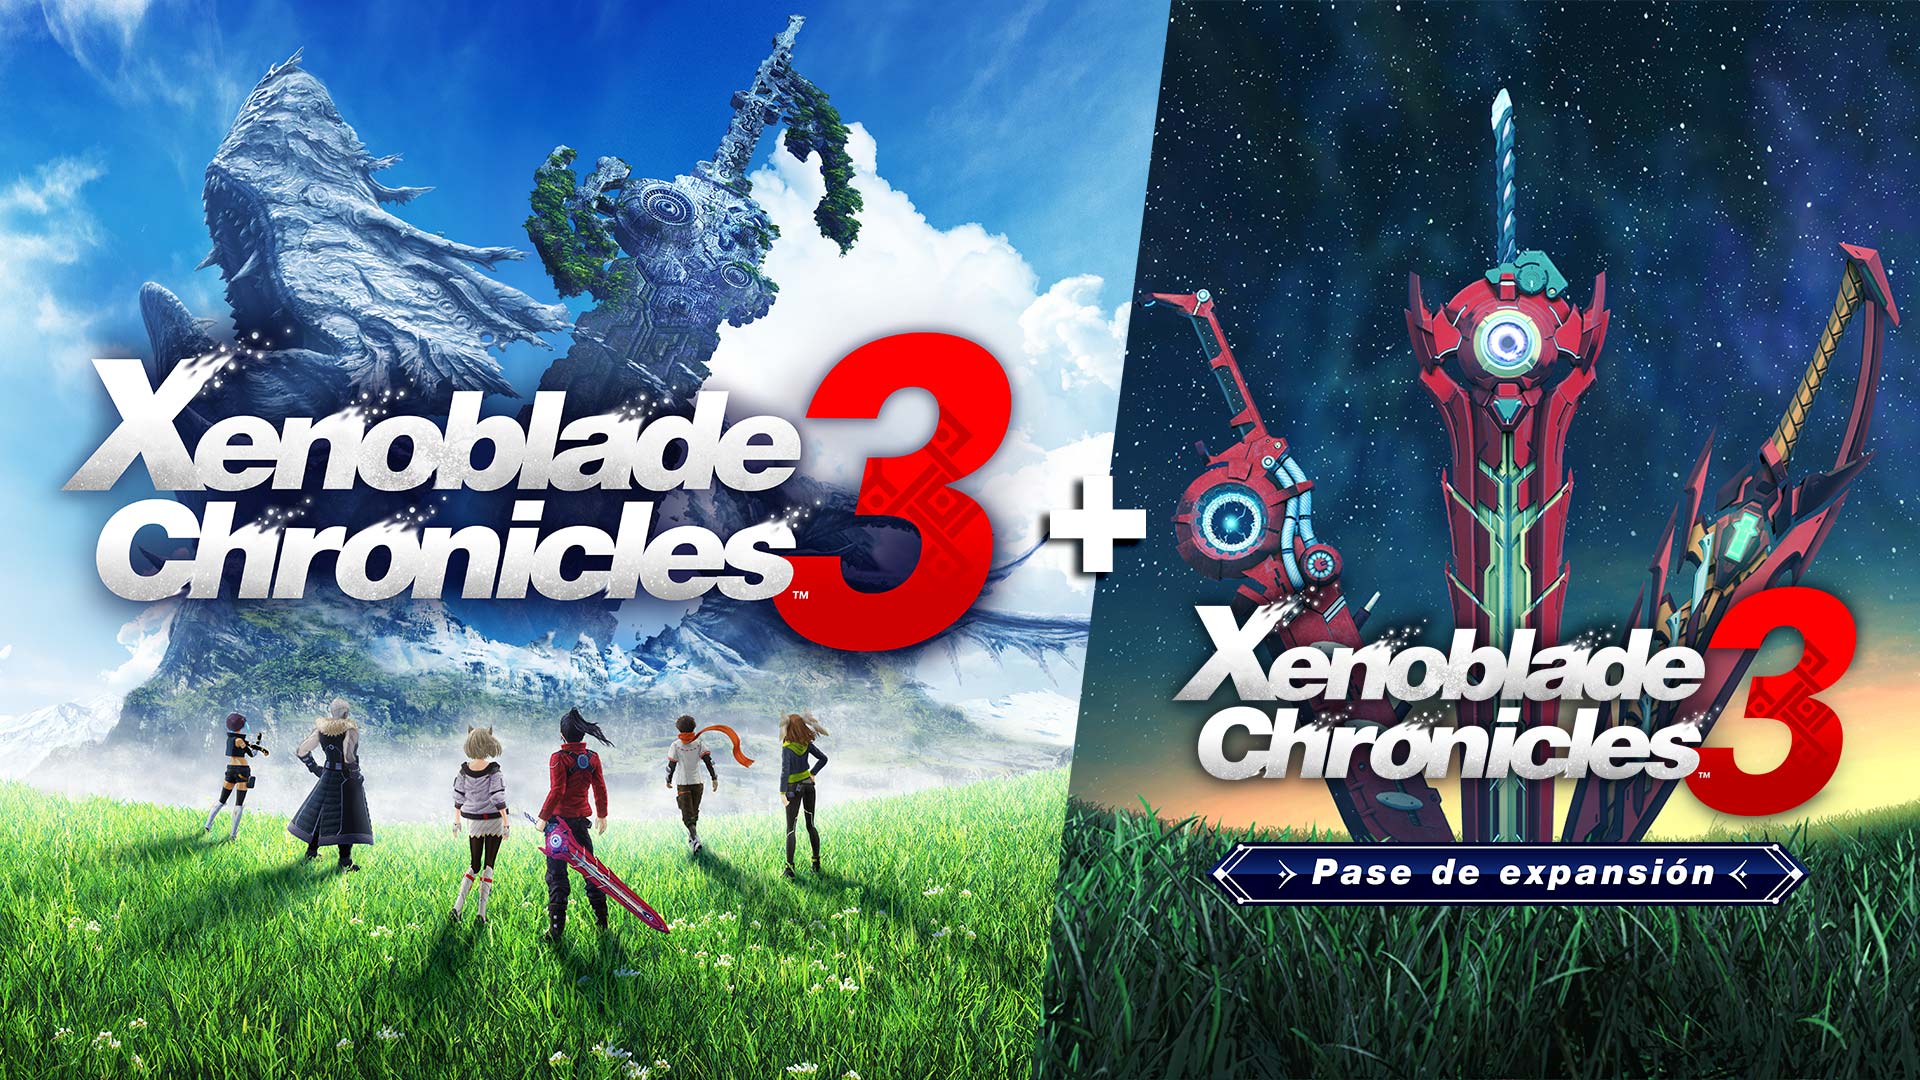 Xenoblade Chronicles™ 3 + Pase de expansión de Xenoblade Chronicles™ 3